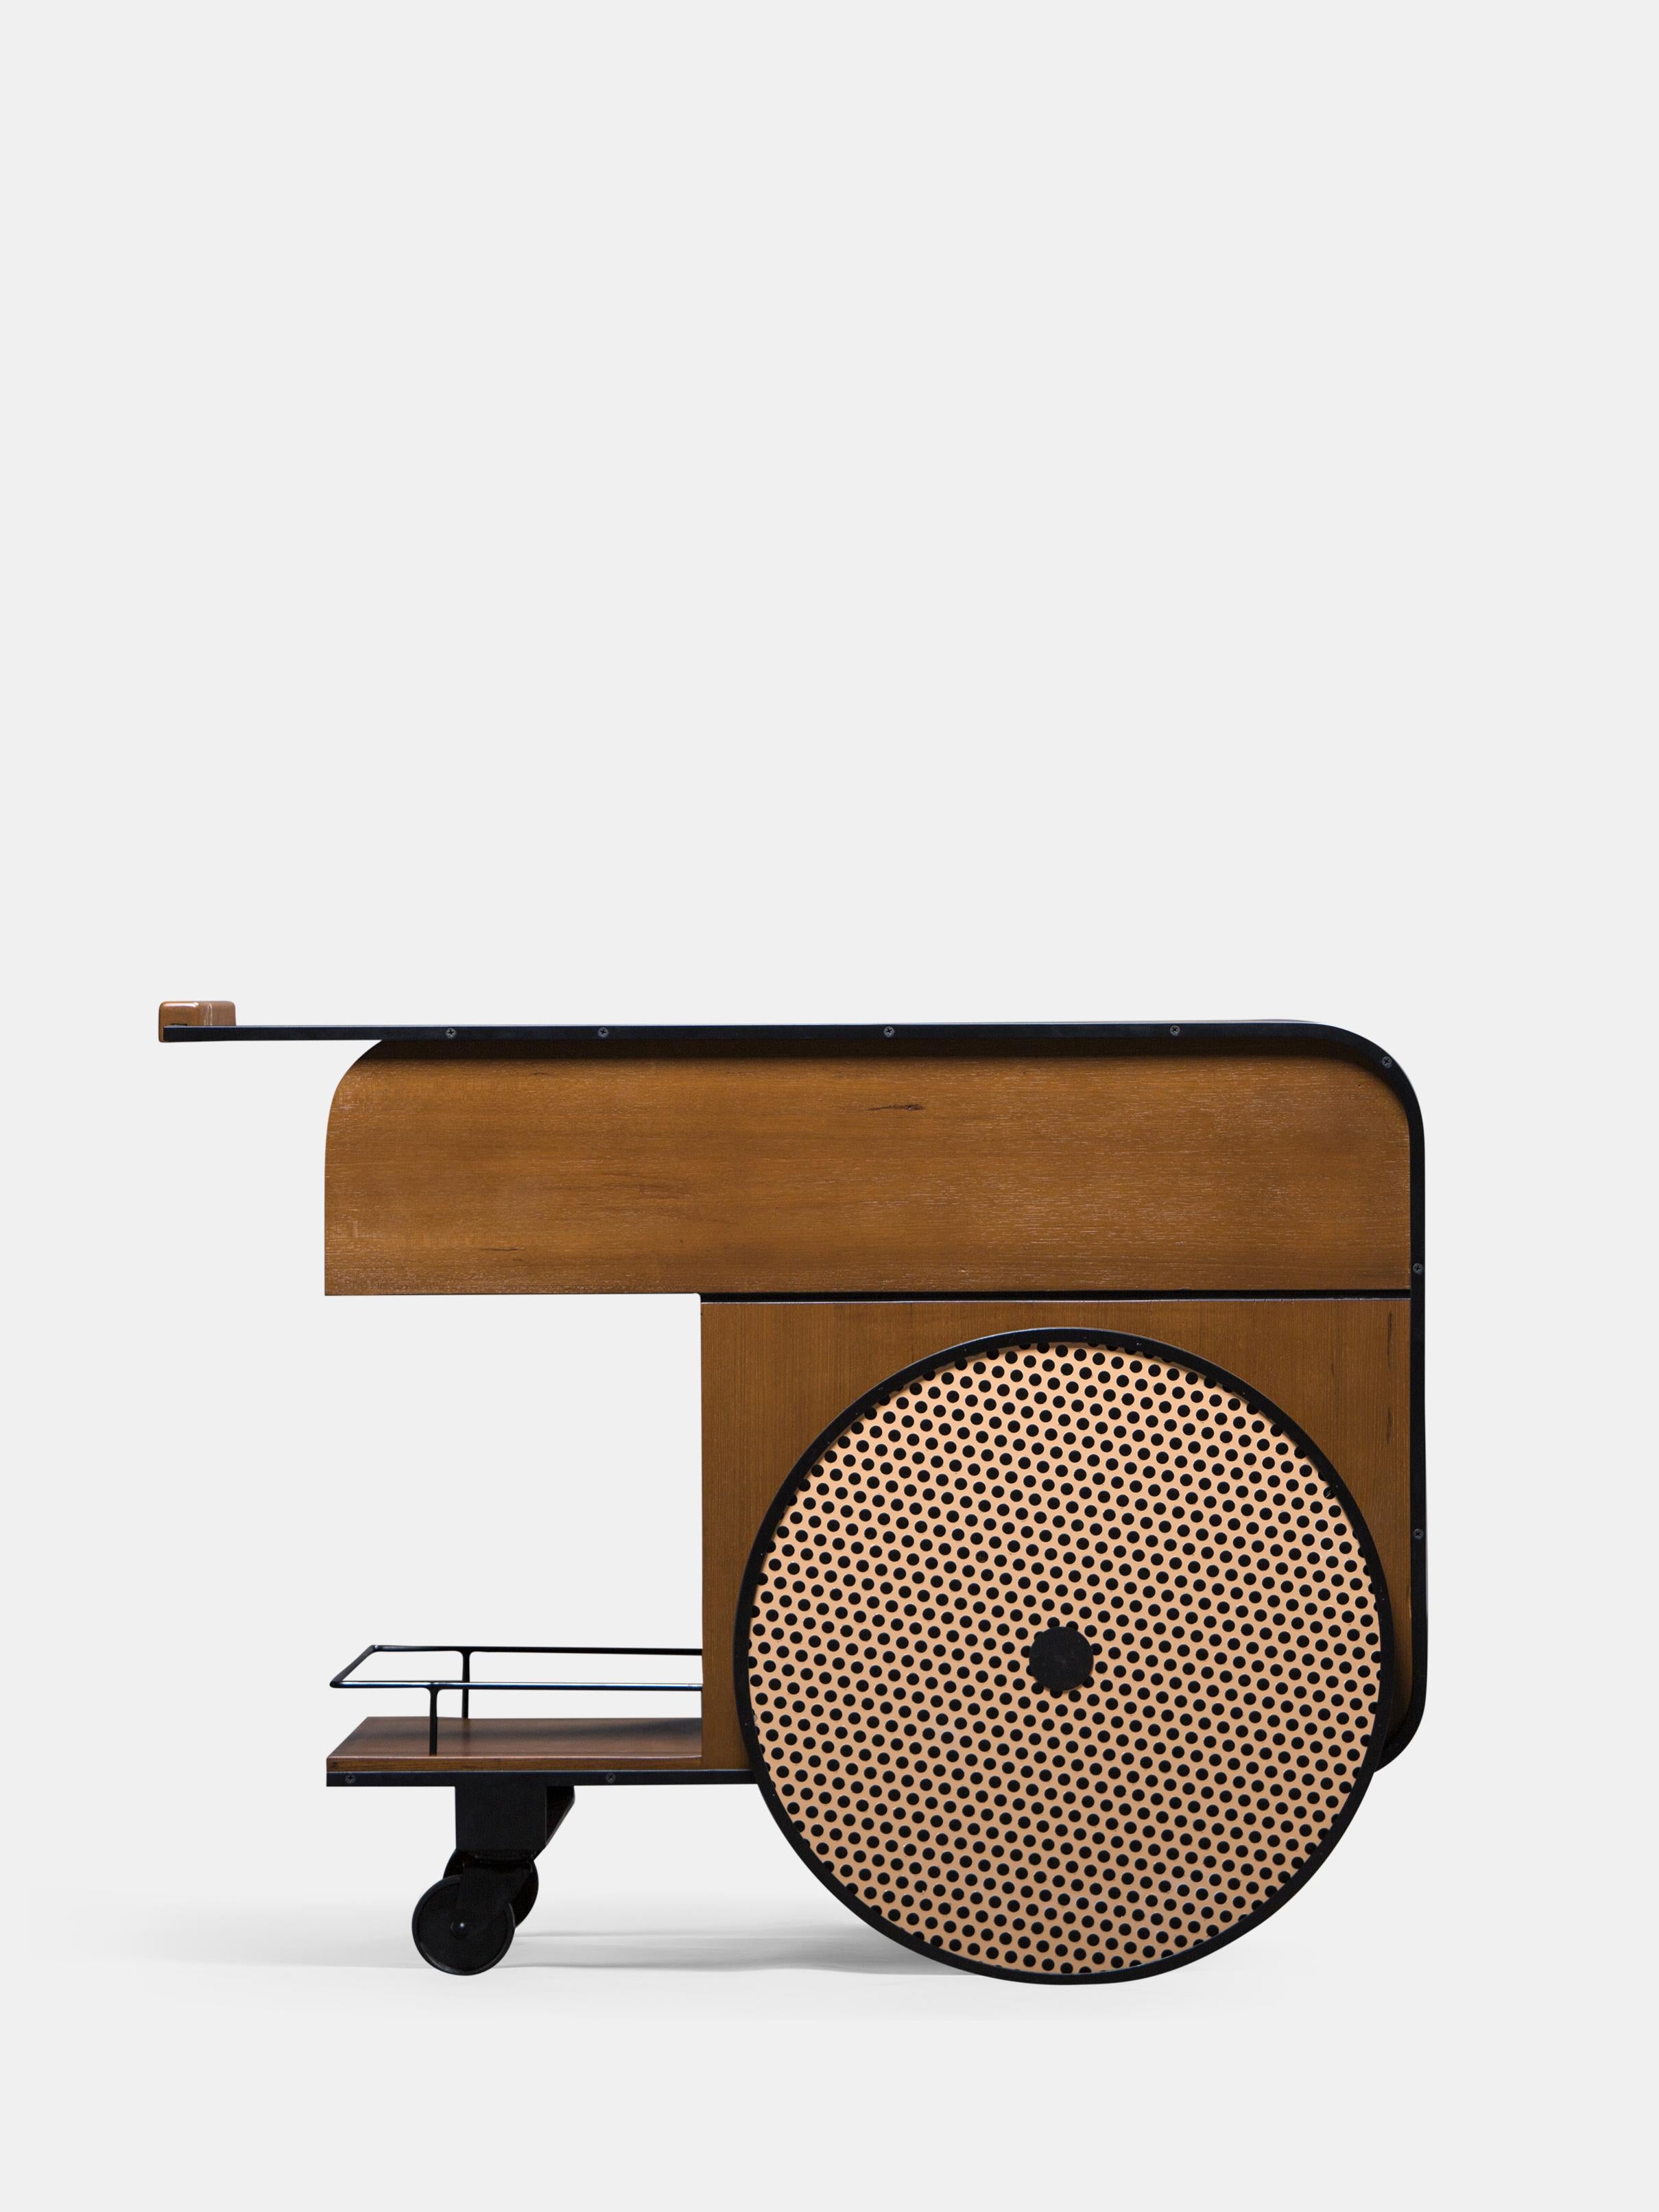 Chariot de bar en teck Trink de Kann Design
Dimensions : D 54 x L 100 x H 75 cm.
MATERIAL : Cadre en acier, bois massif de teck, placage de bois, roue en caoutchouc, aluminium.

Avec le chariot de bar Trink, les deux designers Karl Chucri et Rami